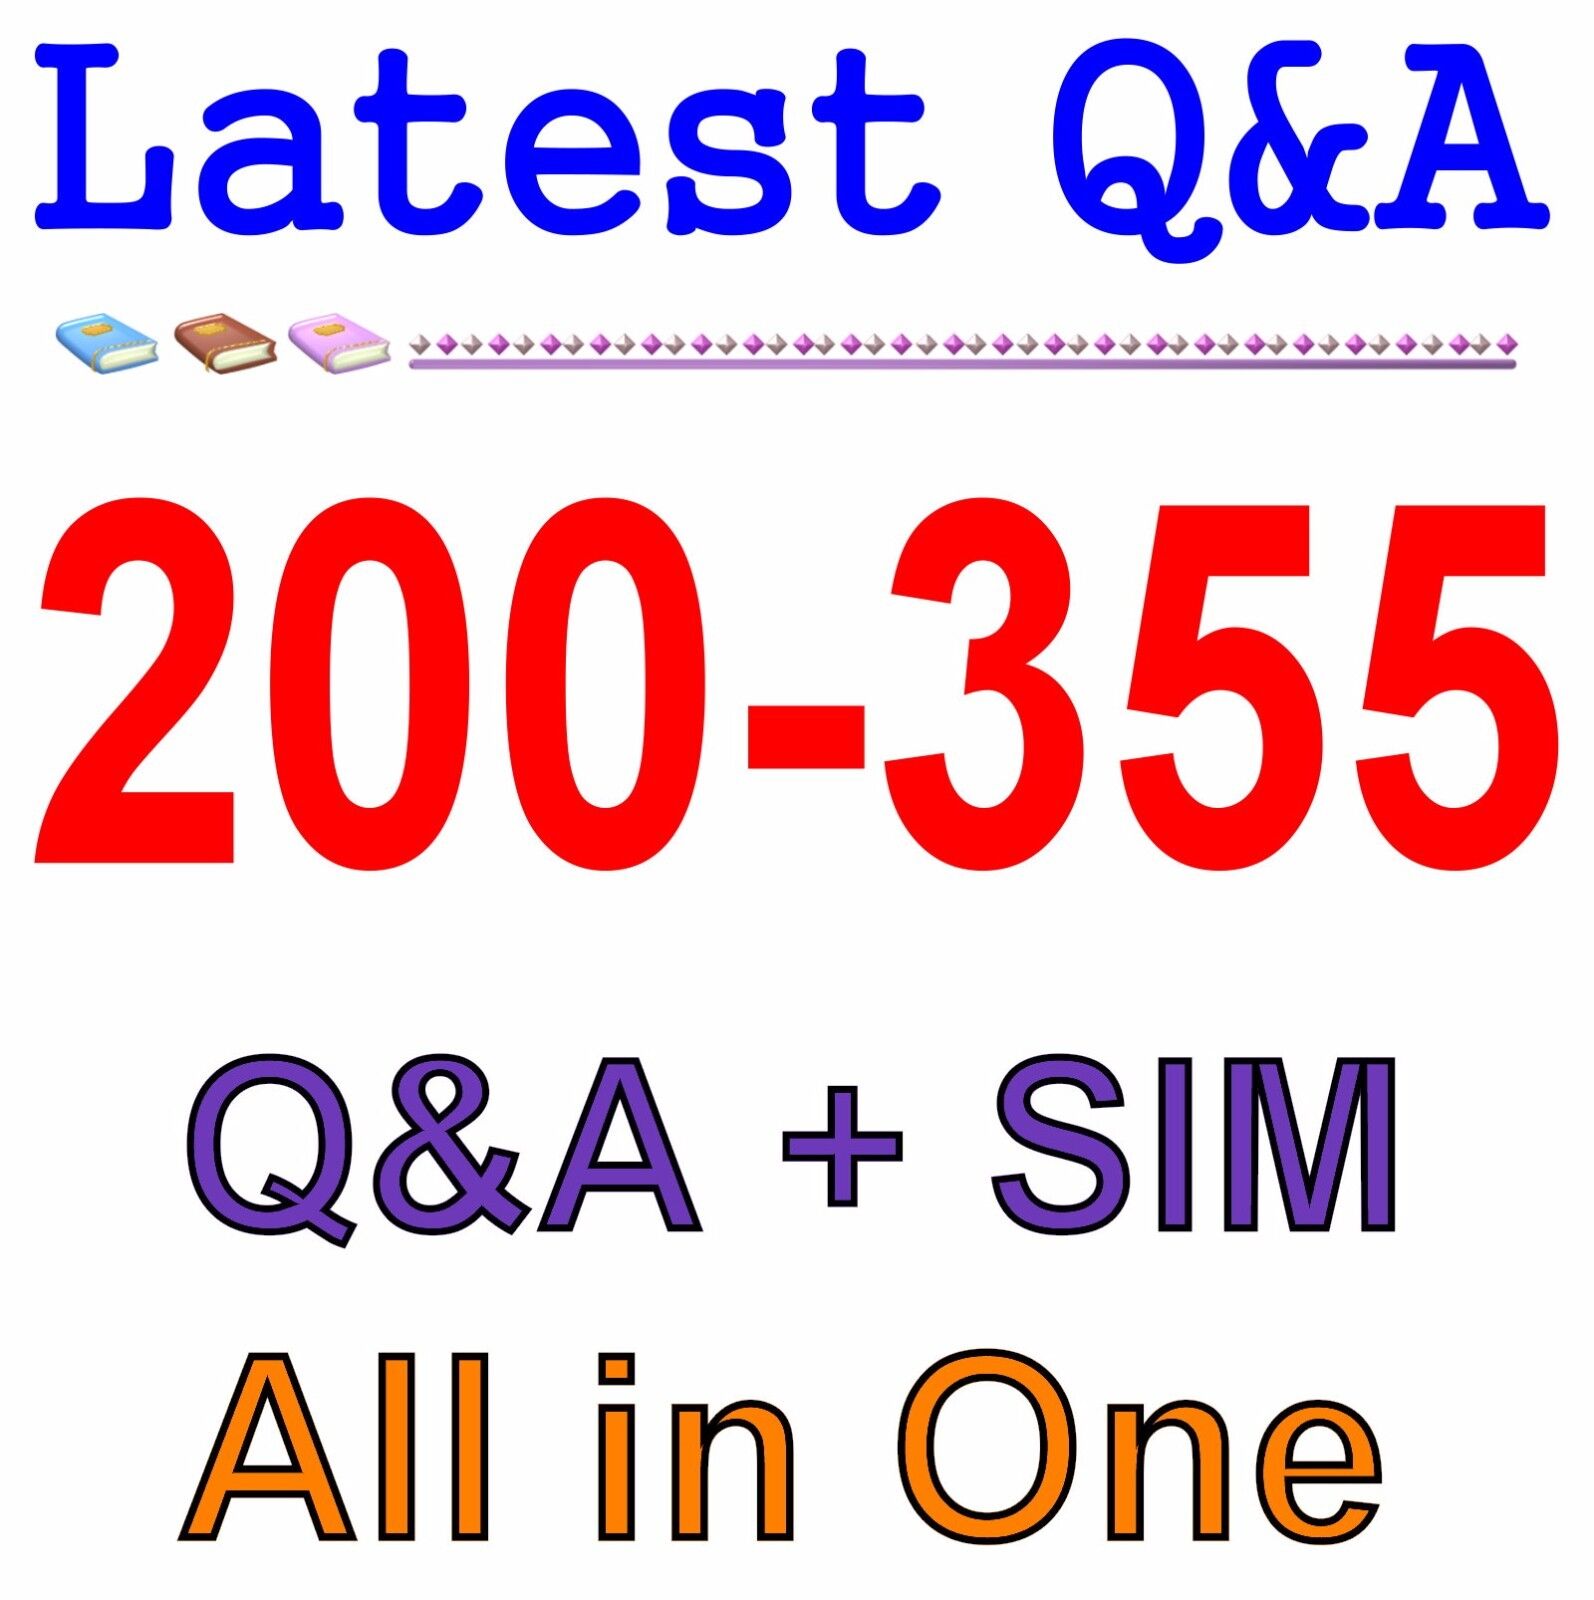 Cisco Best Practice Material For 200-355 Exam Q&A+SIM